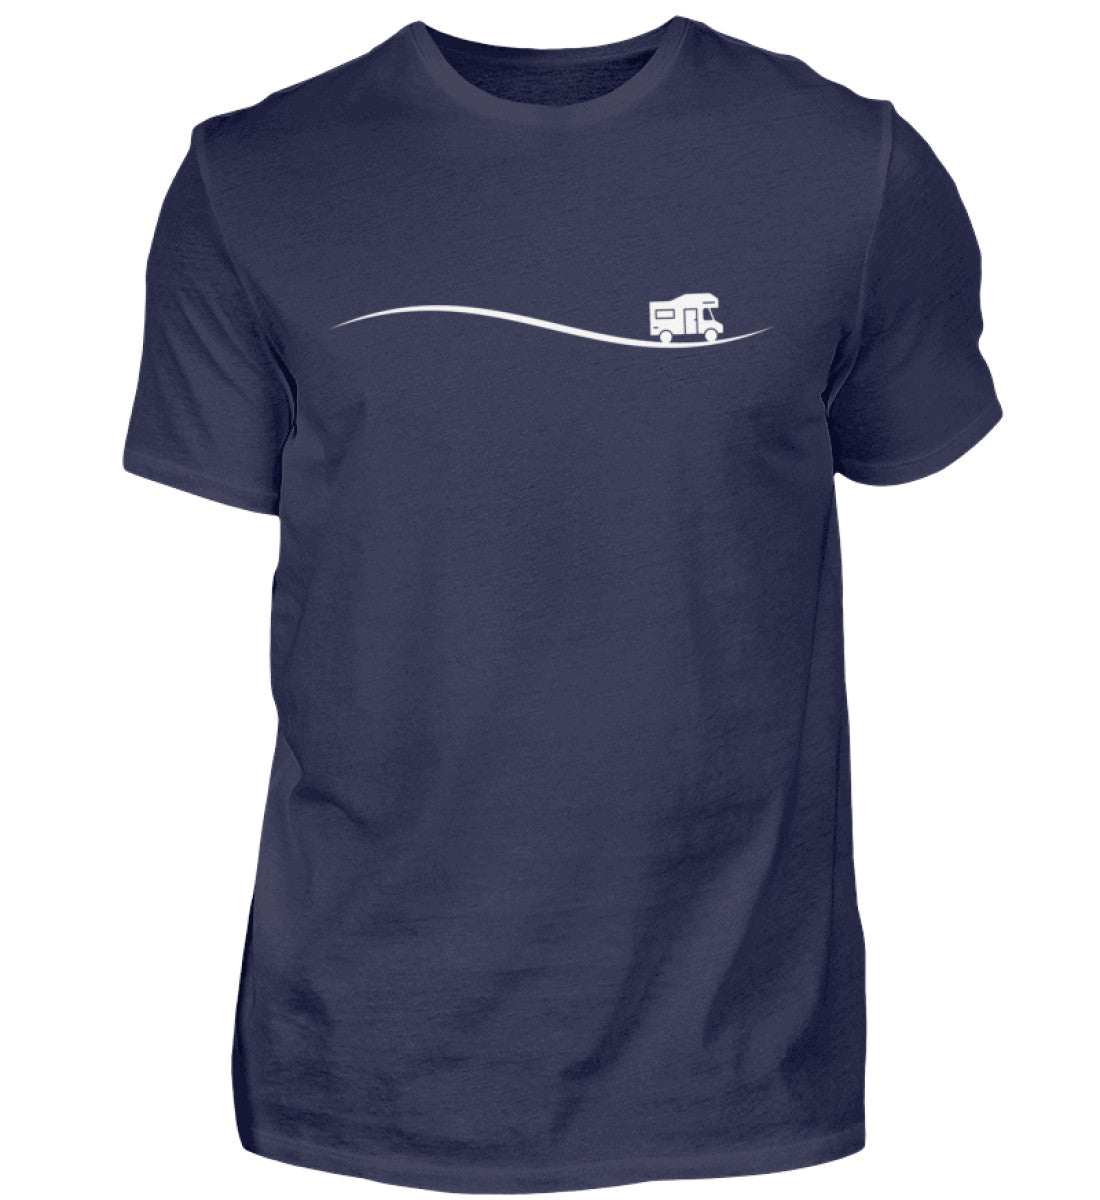 UNTERWEGS - Herren Shirt in der Farbe Navy